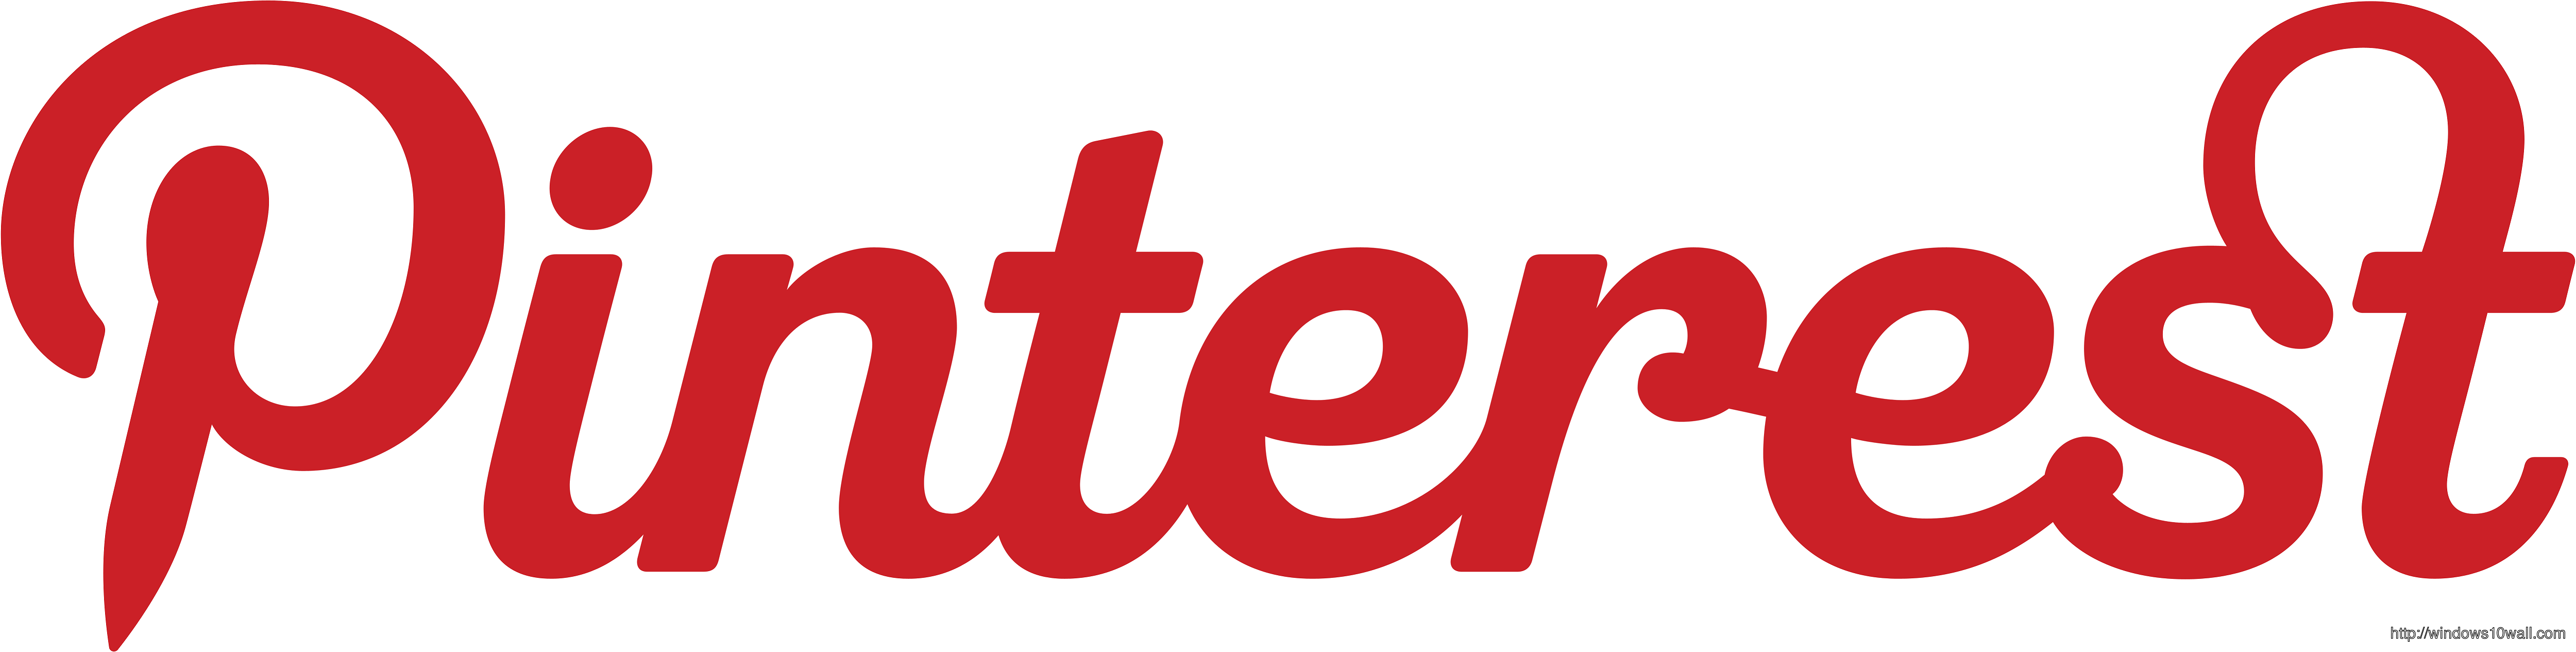 Pinterest logo Background Wallpaper